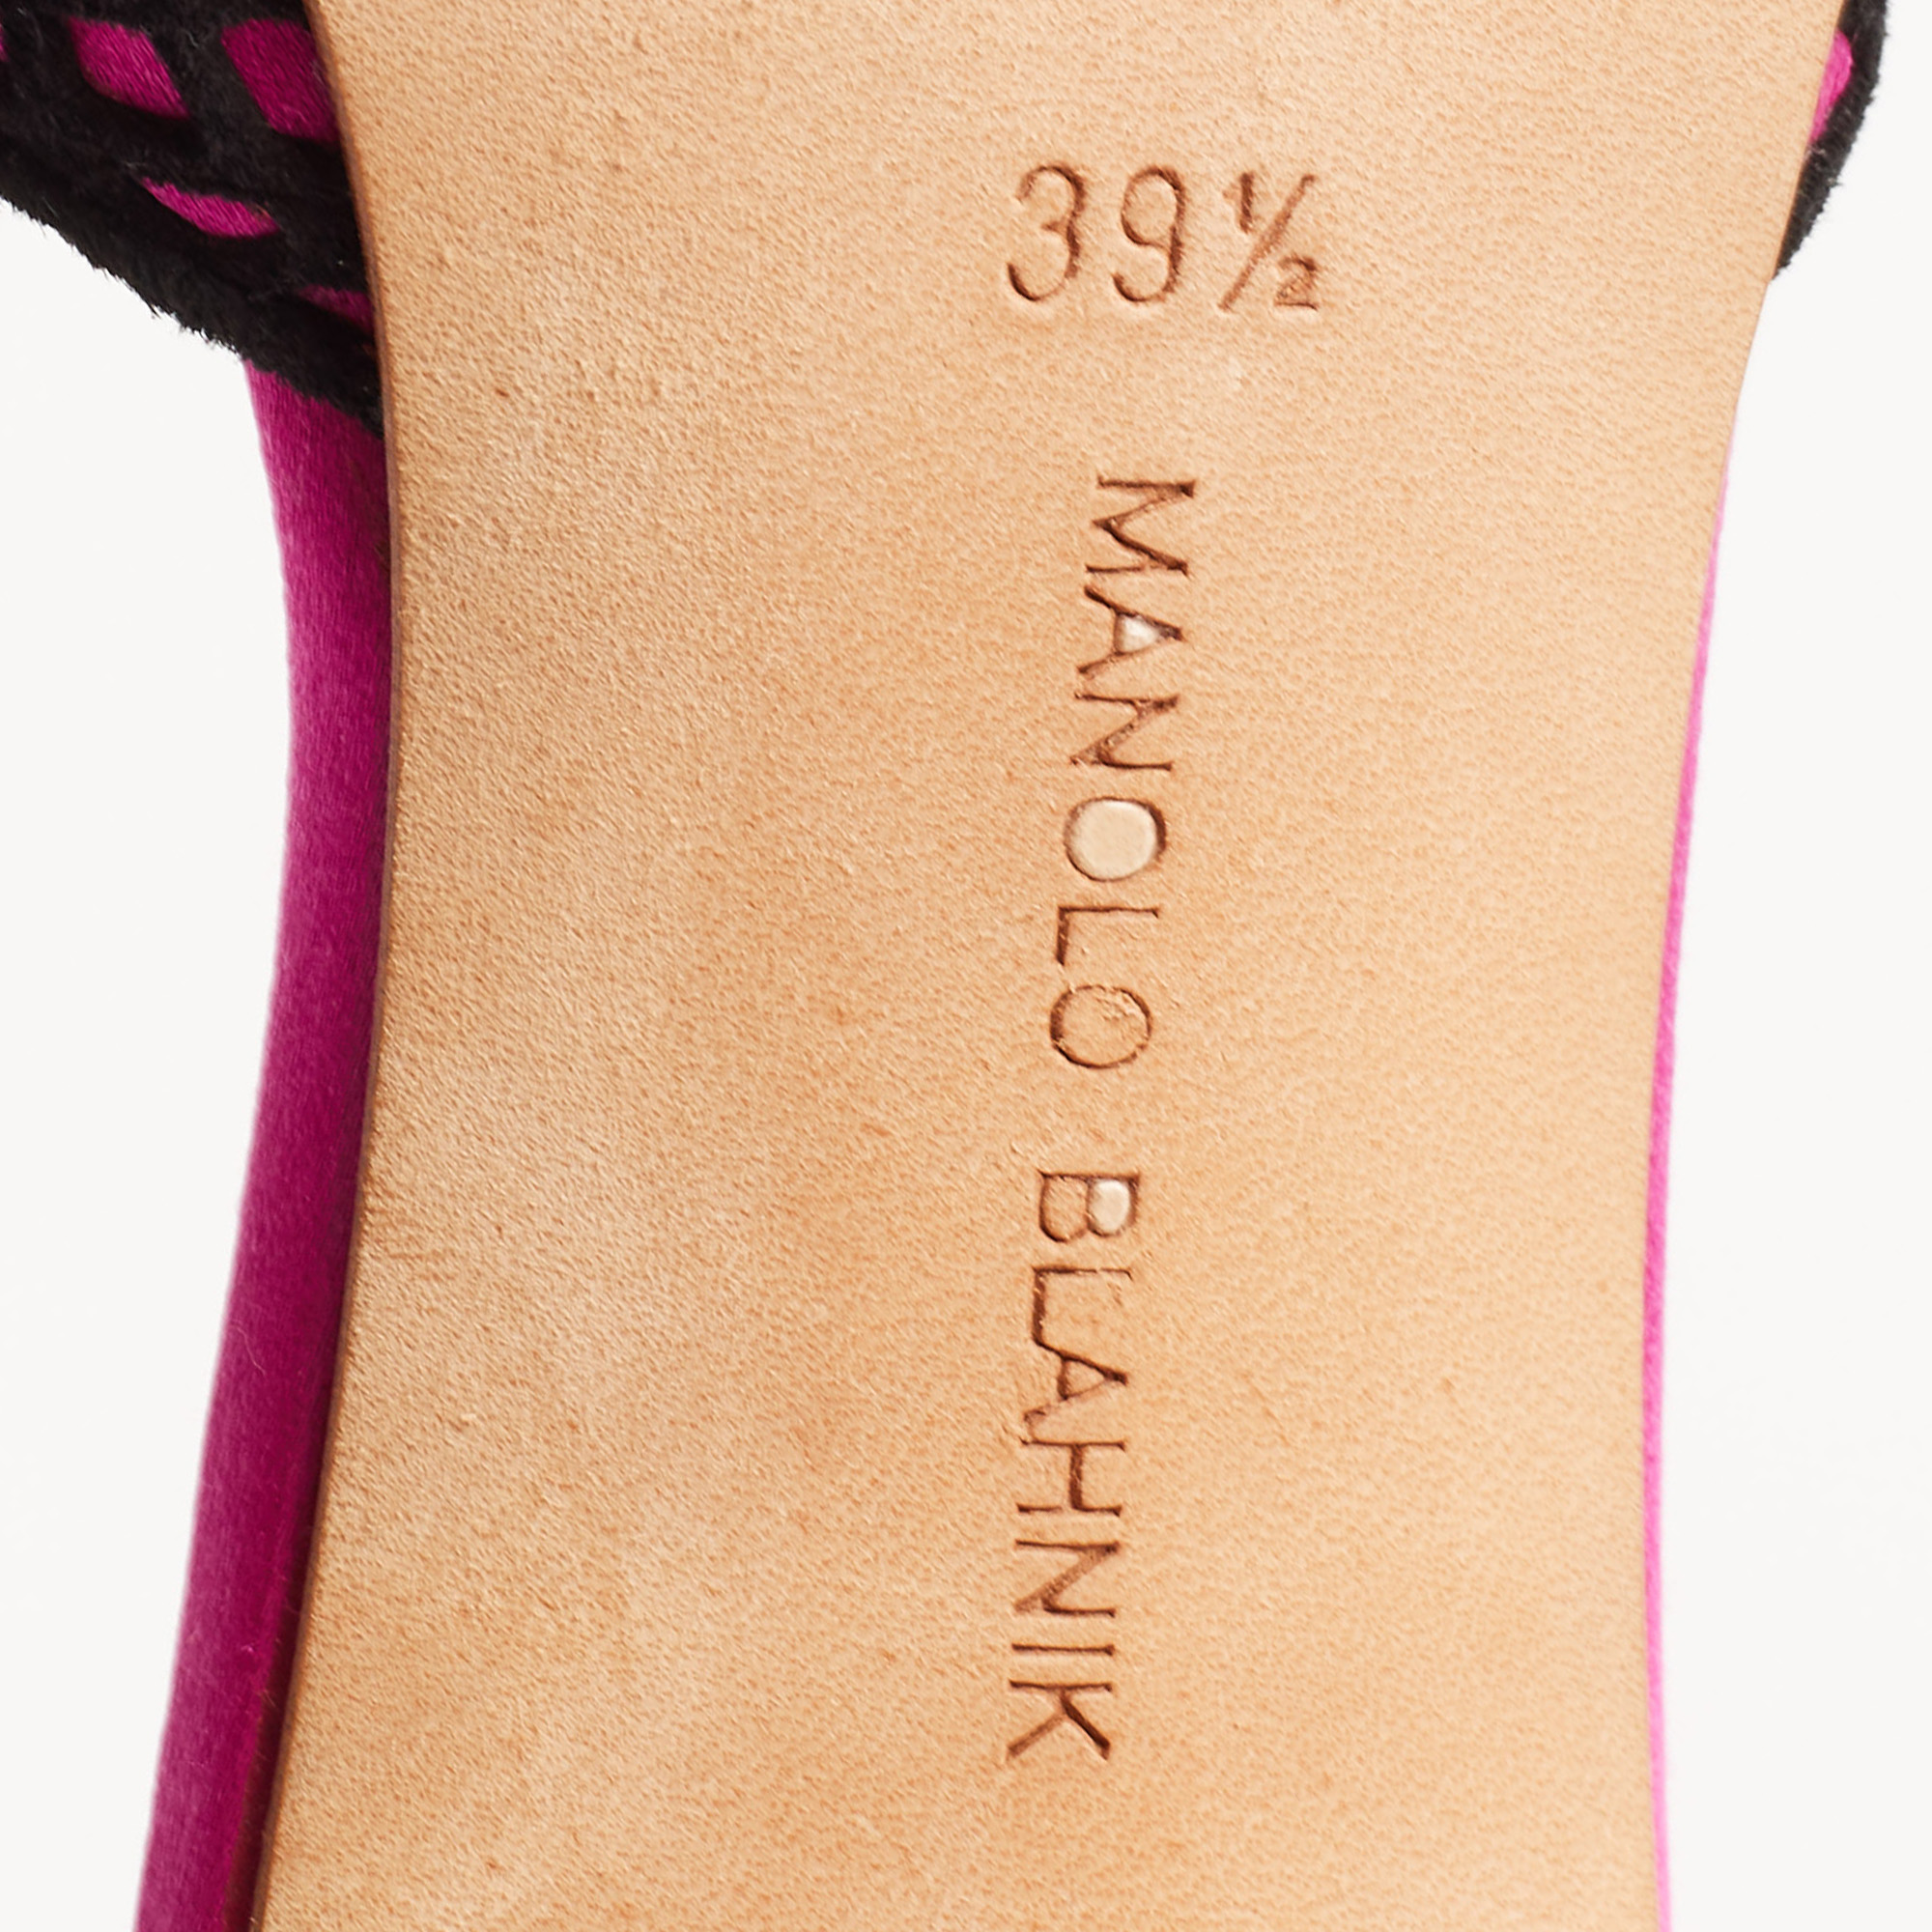 Manolo Blahnik Pink/Black  Satin And Lace Borli Crystal Embellished Mules Size 39.5